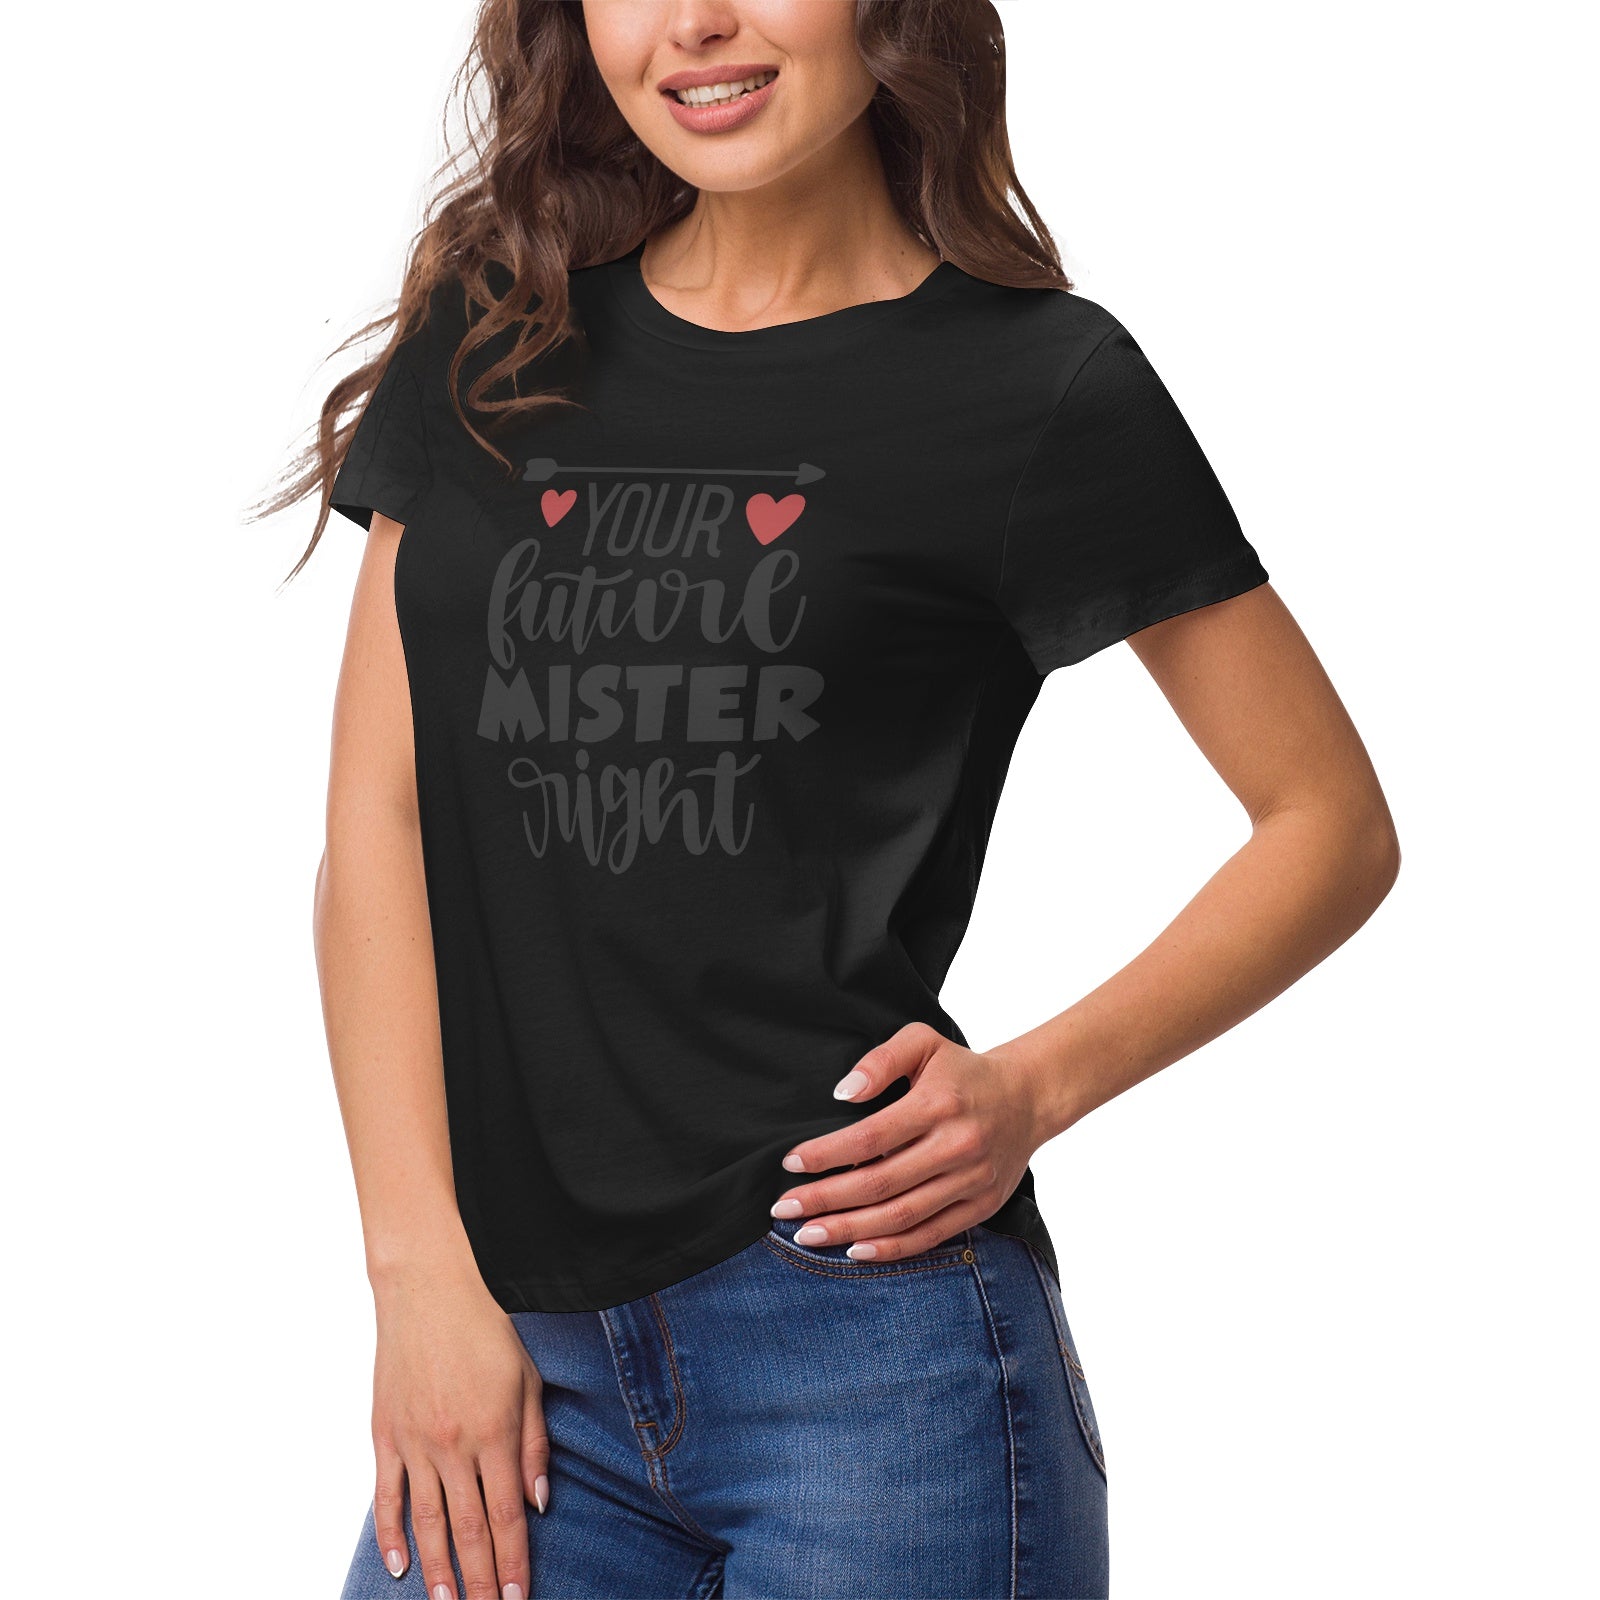 Fantasy 21 Women's Ultrasoft Pima Cotton T‑shirt - DromedarShop.com Online Boutique